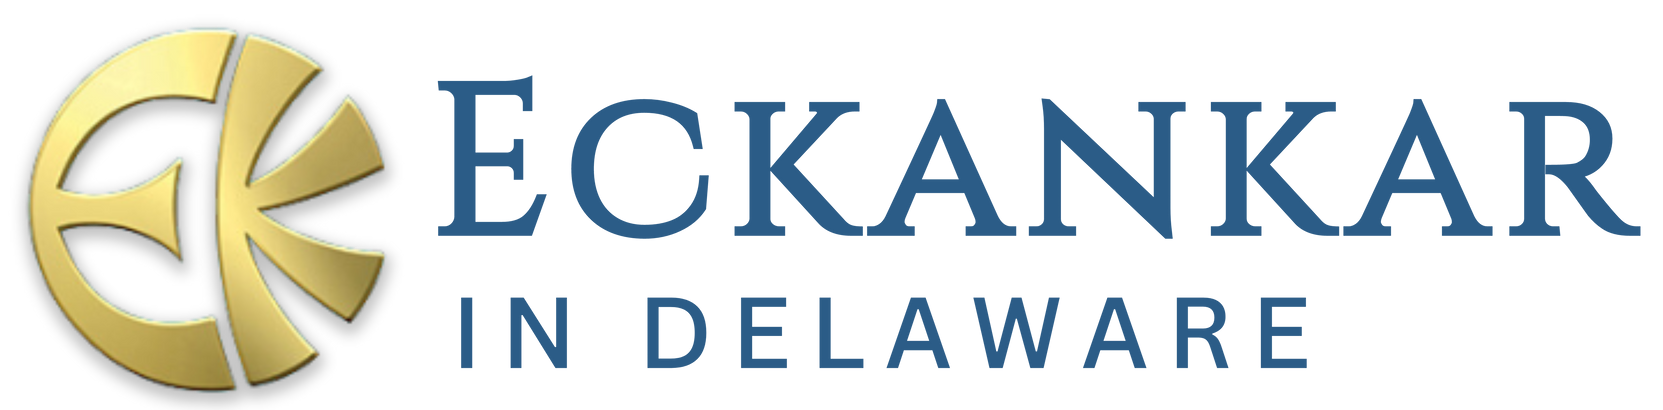 Eckankar Delaware logo